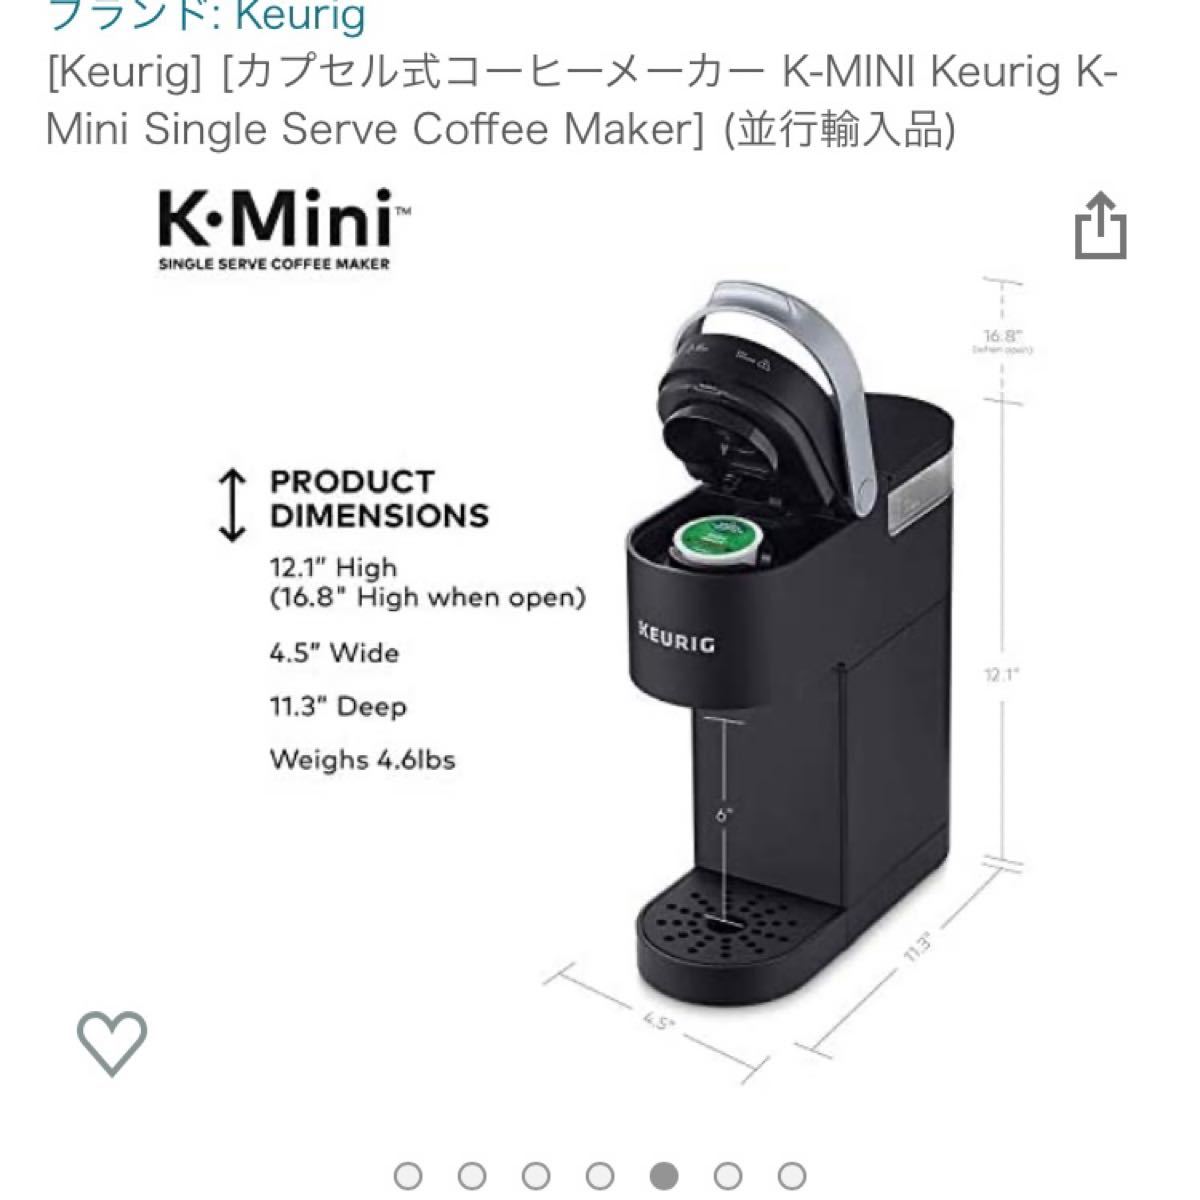 [Keurig] カプセル式コーヒーメーカー K-MINI キューリグ　変換アダプタ付